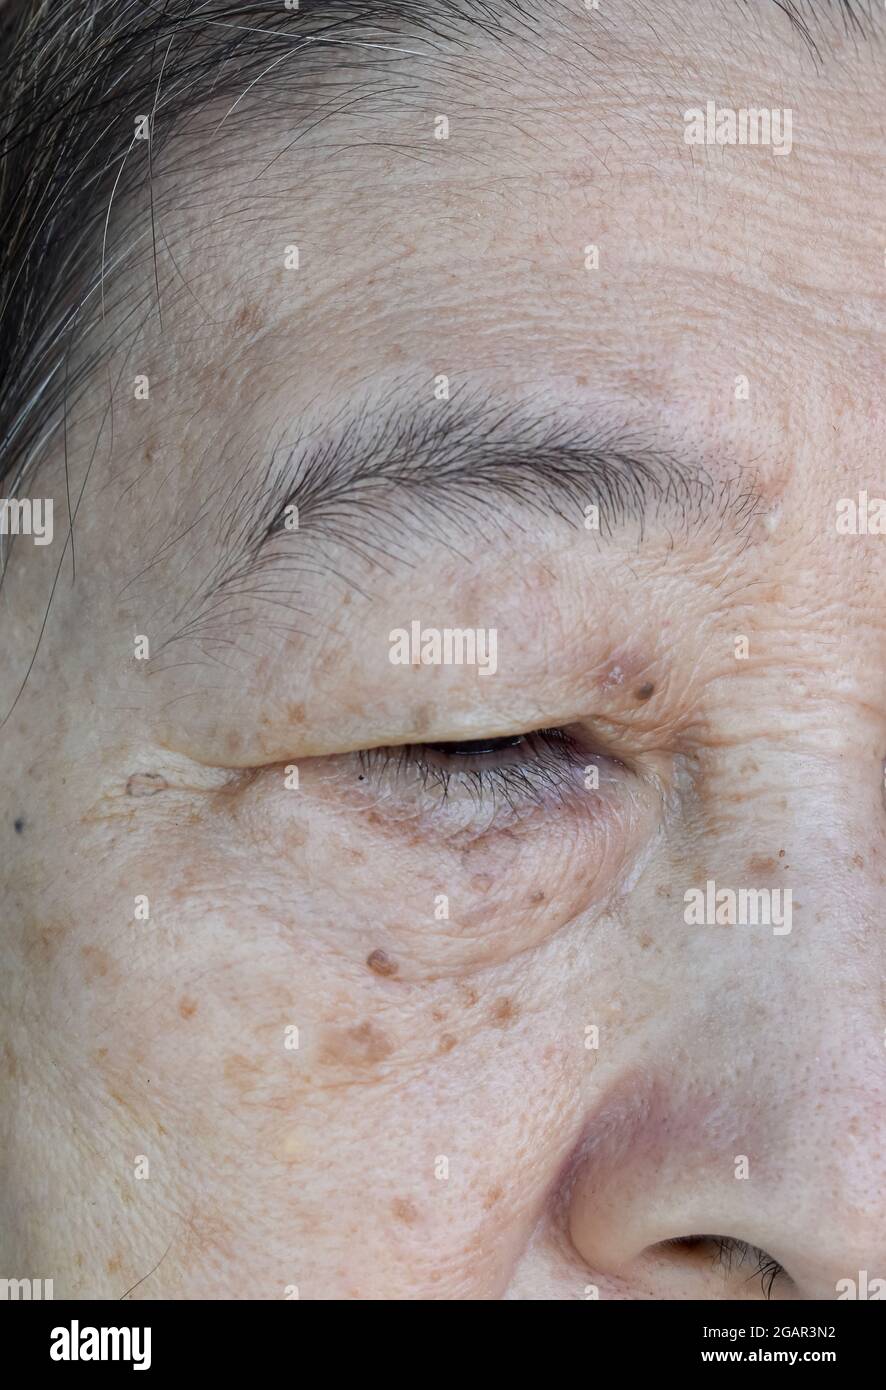 Pliegues de la piel envejecidos o arrugas o arrugas de la piel y manchas de envejecimiento en la cara especialmente alrededor del ojo del sudeste asiático, mujer anciana china. Vista de primer plano. Foto de stock